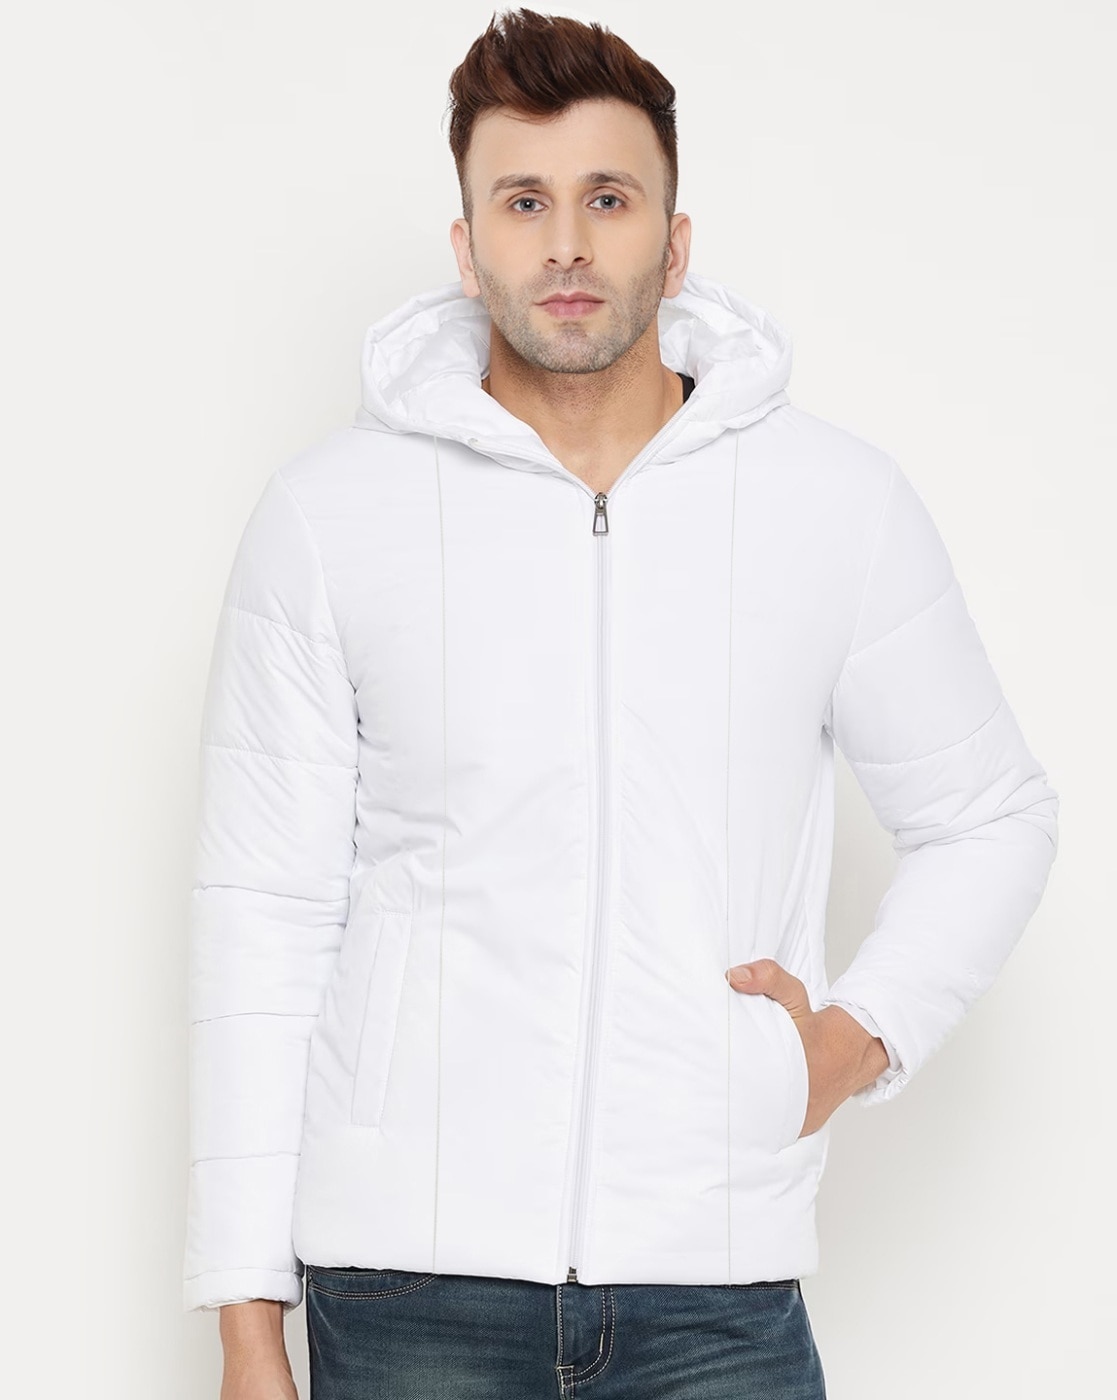 Buy Lure Urban Men Winter Wear Stylish Full Sleeve Zipper Jacket online